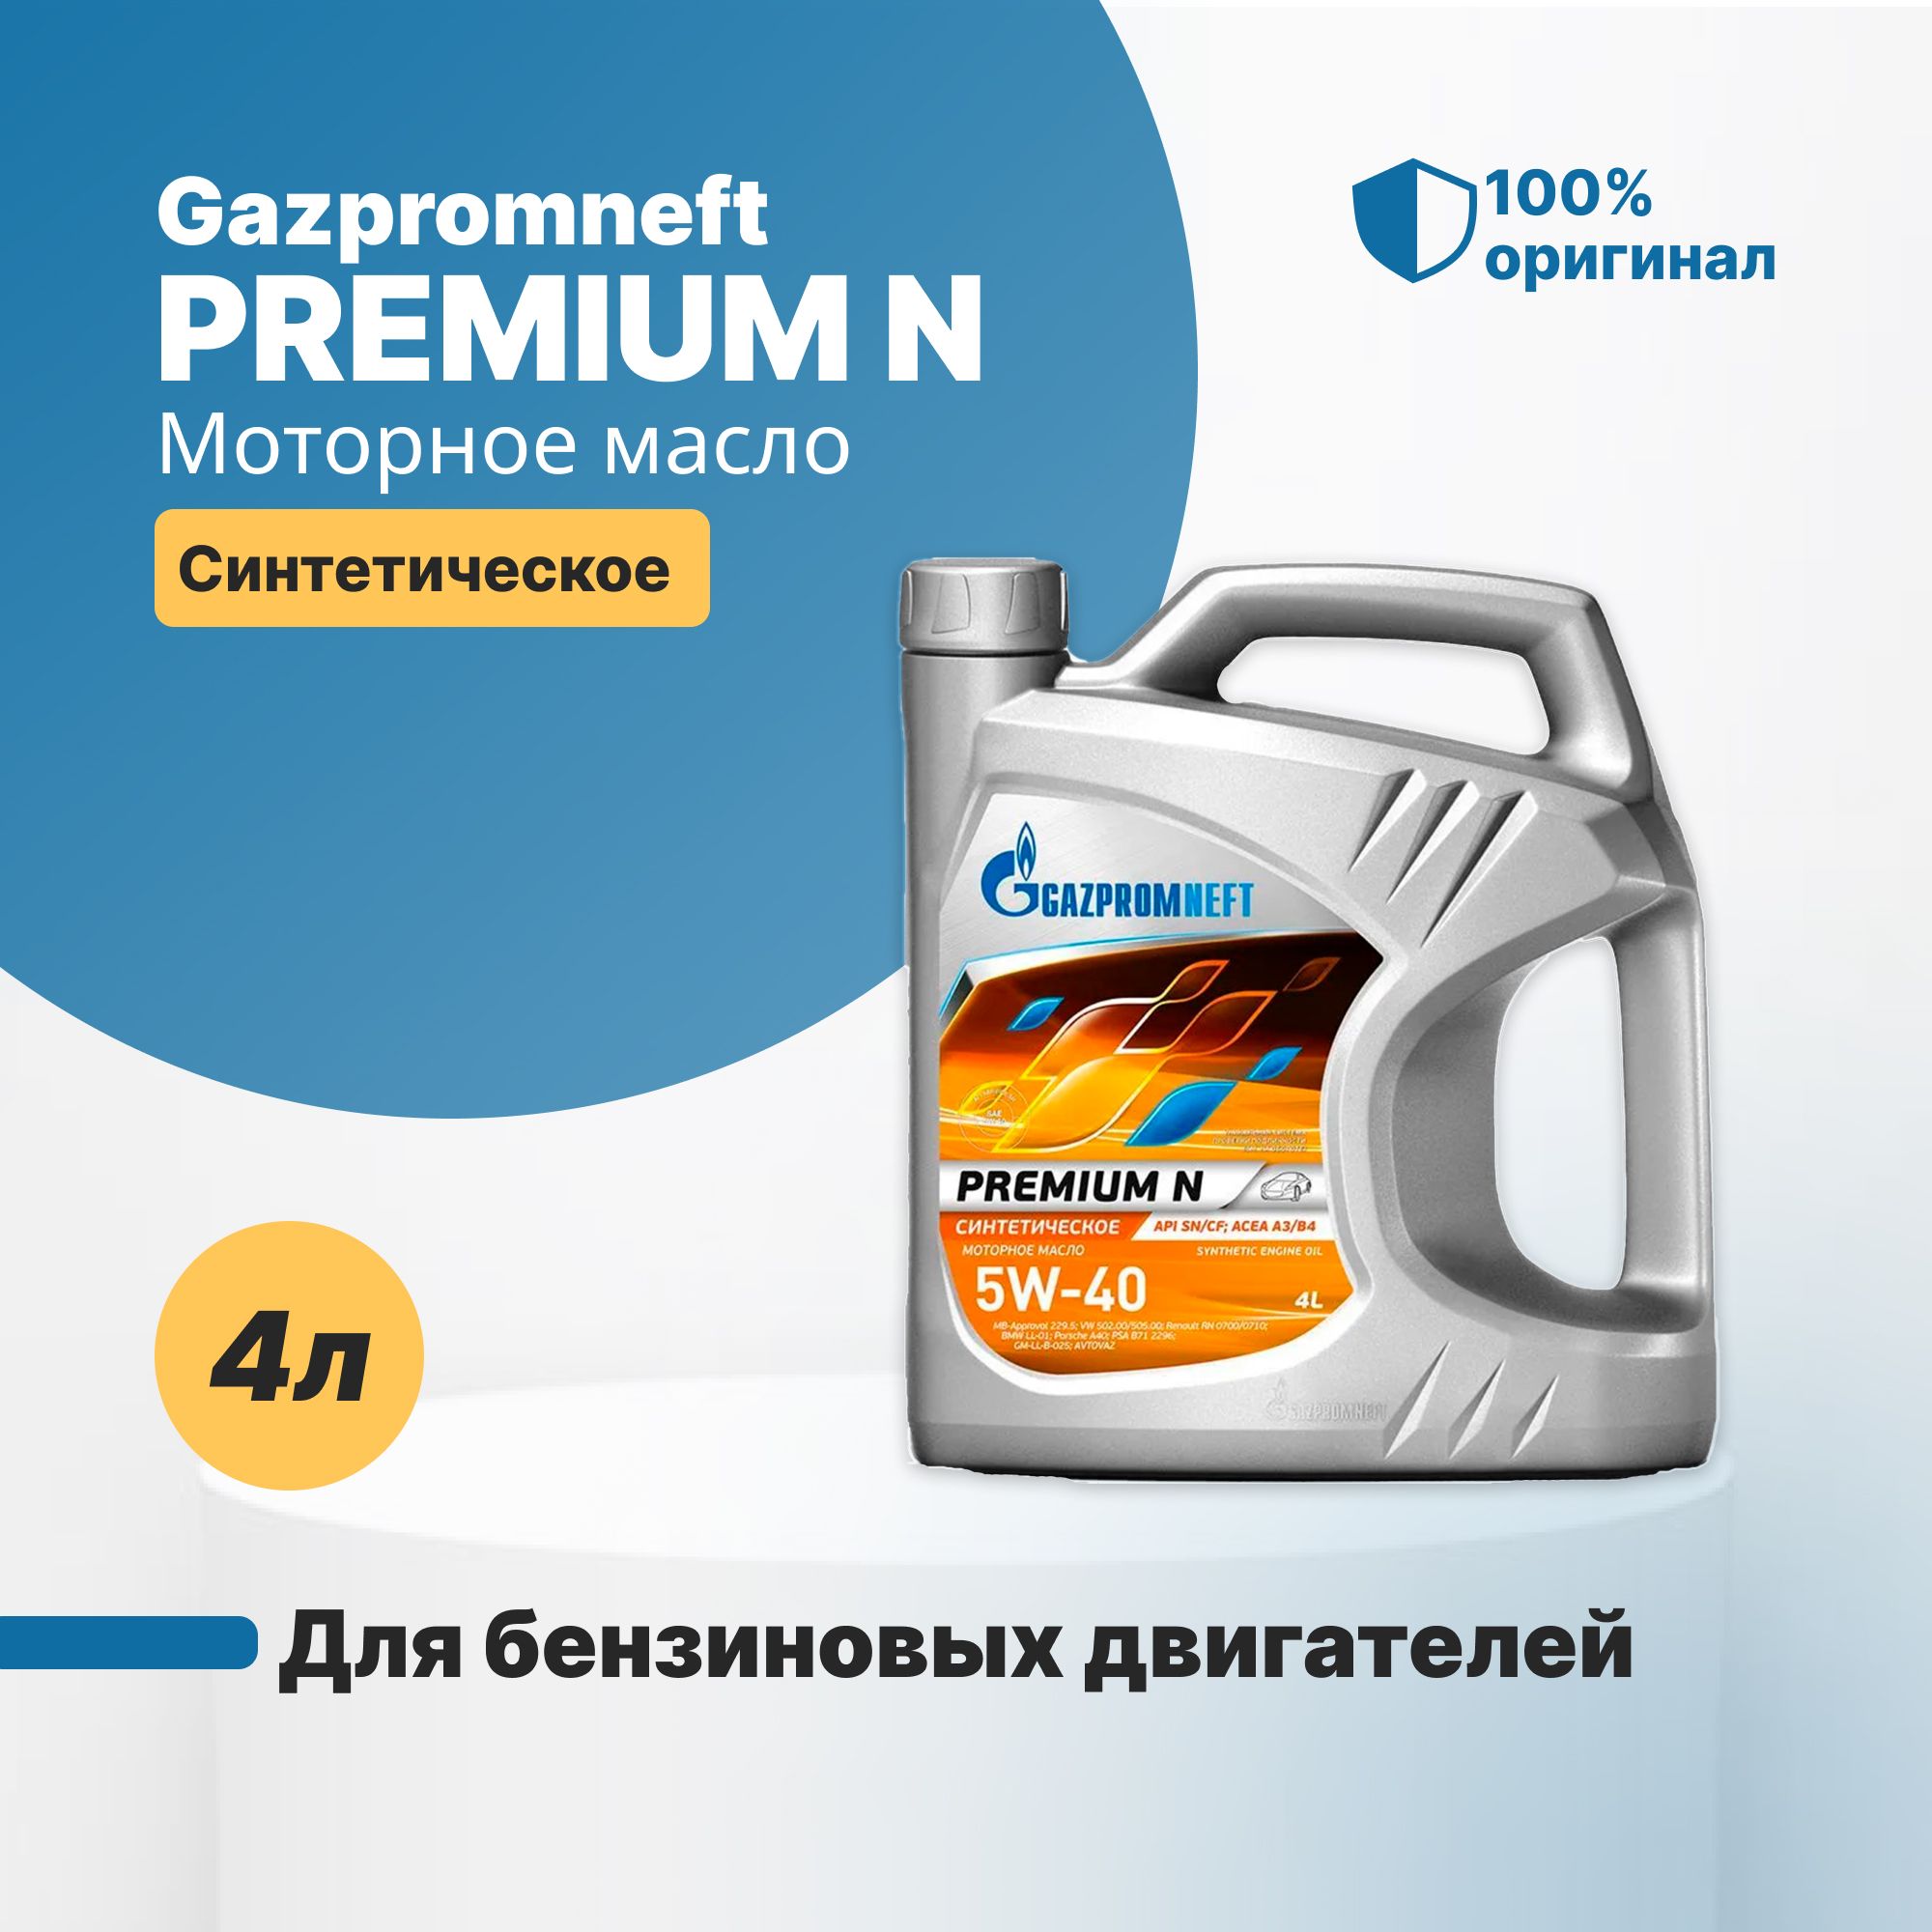 Масло газпромнефть 5w40 premium. Масло Газпромнефть 5 в 40 синтетика. Масло Газпромнефть 5w40 синтетика. Газпромнефть Premium n 5w-40.